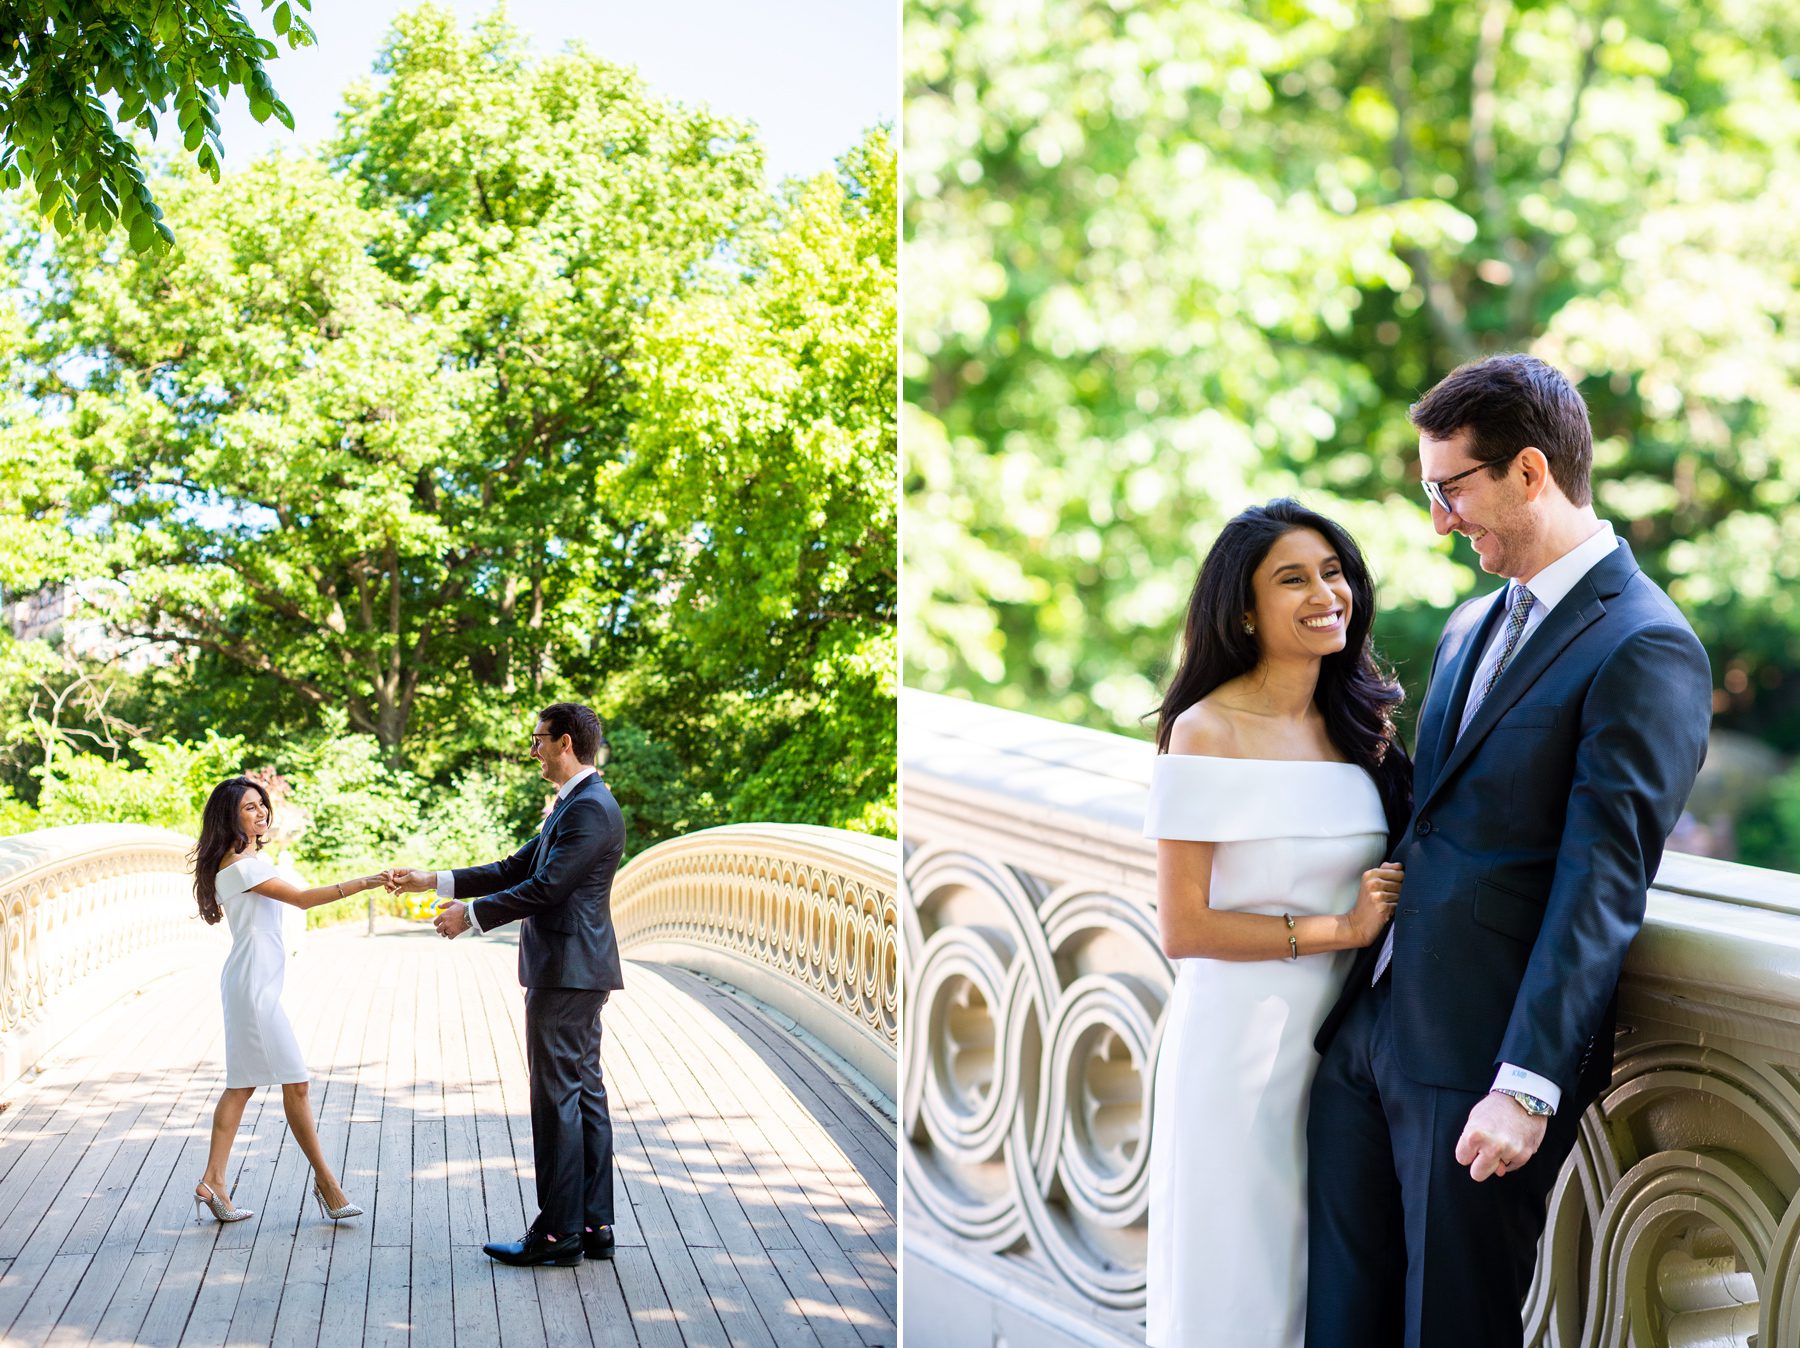 Wedding Photos at Bow Bridge Central Park